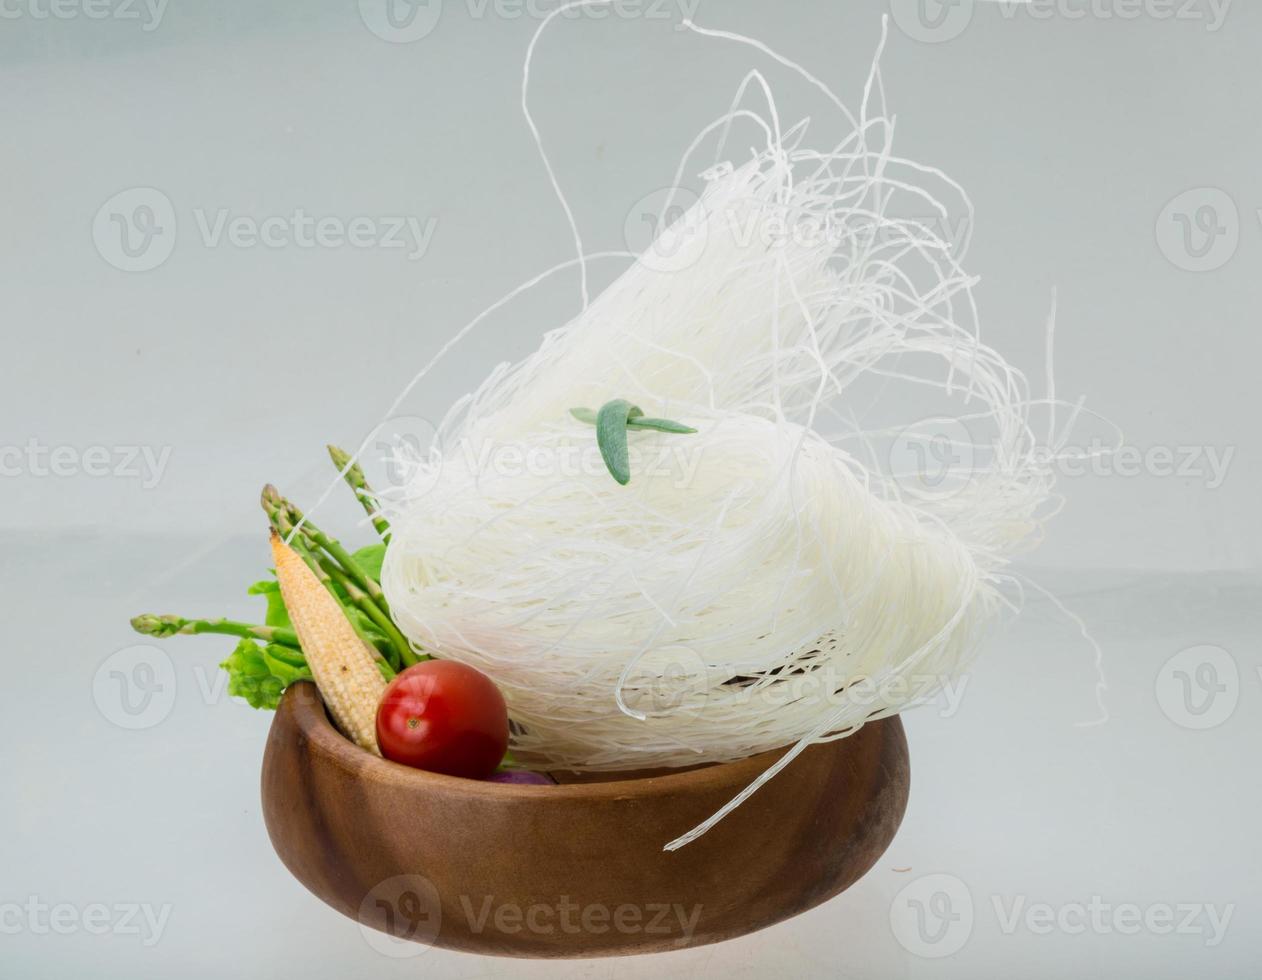 macarrão de arroz cru em uma tigela no fundo branco foto